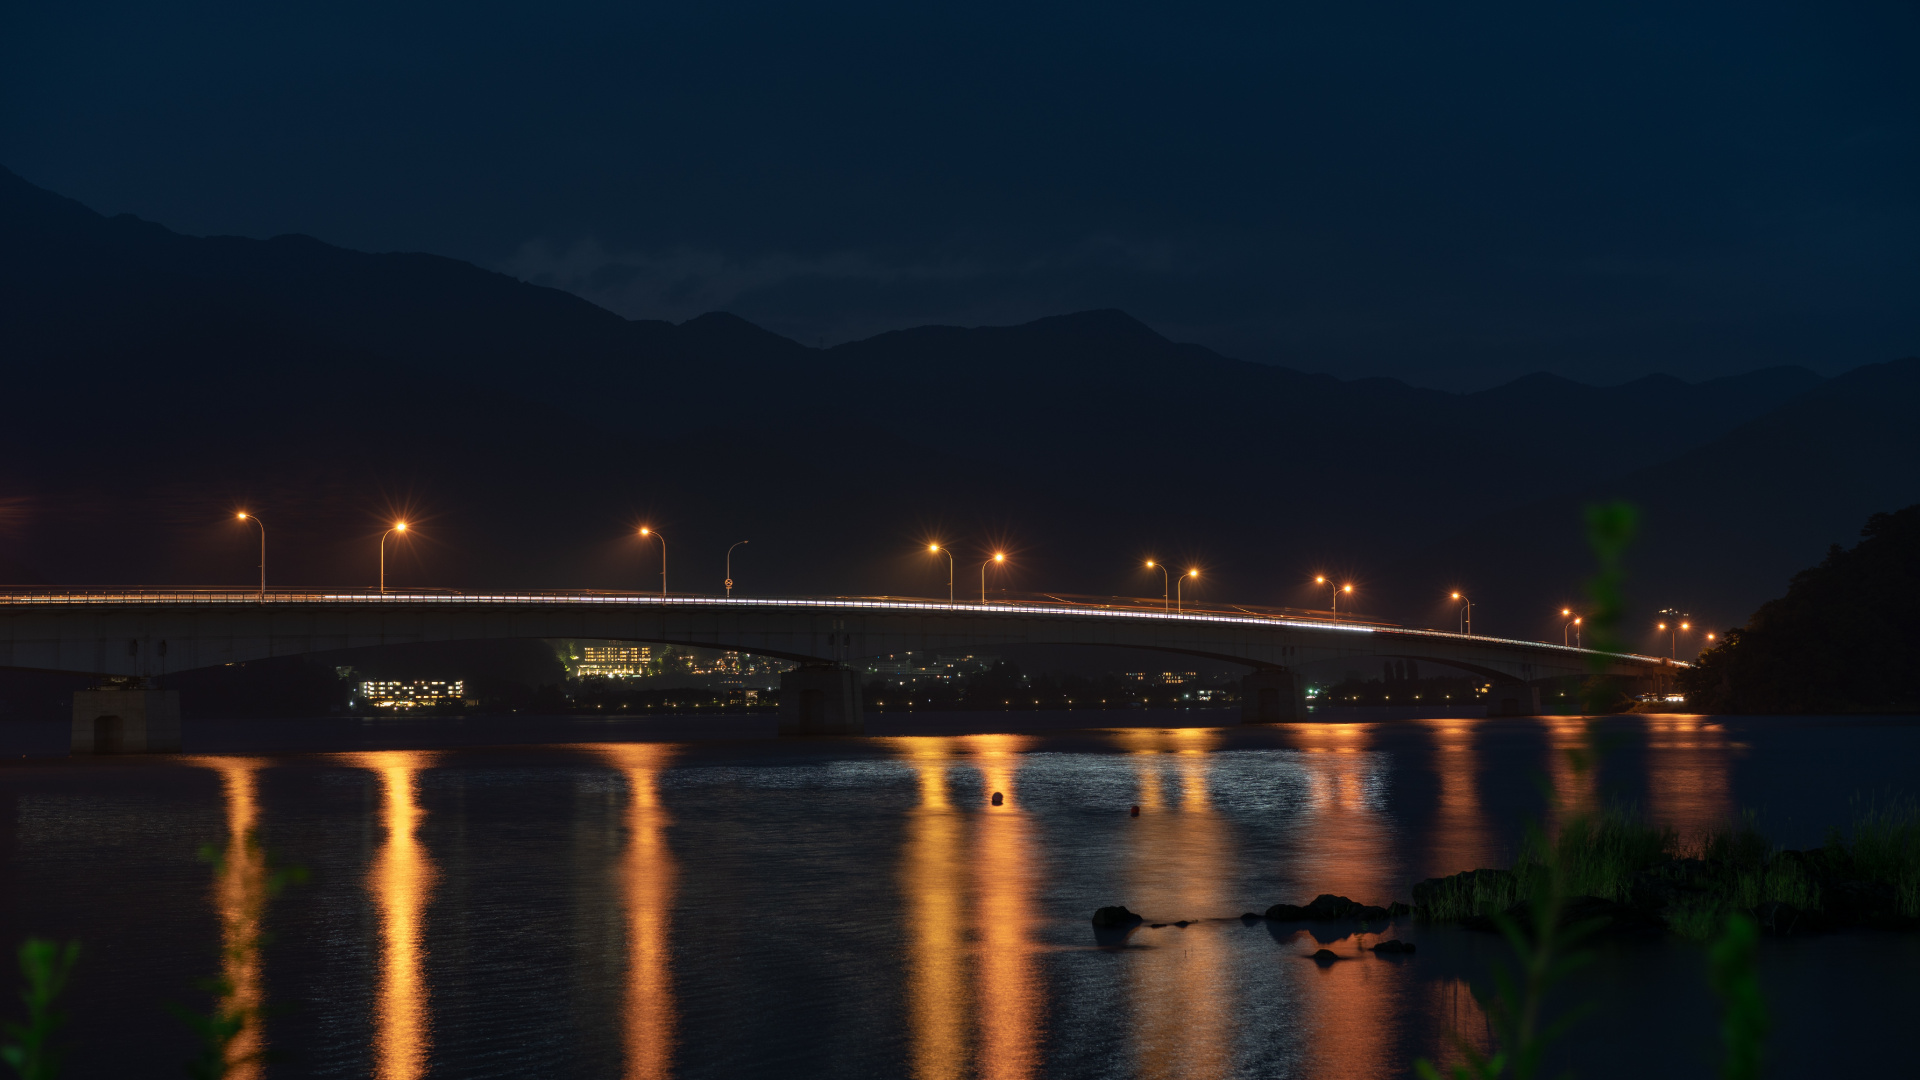 Puente Iluminado Sobre el Agua Durante la Noche. Wallpaper in 1920x1080 Resolution